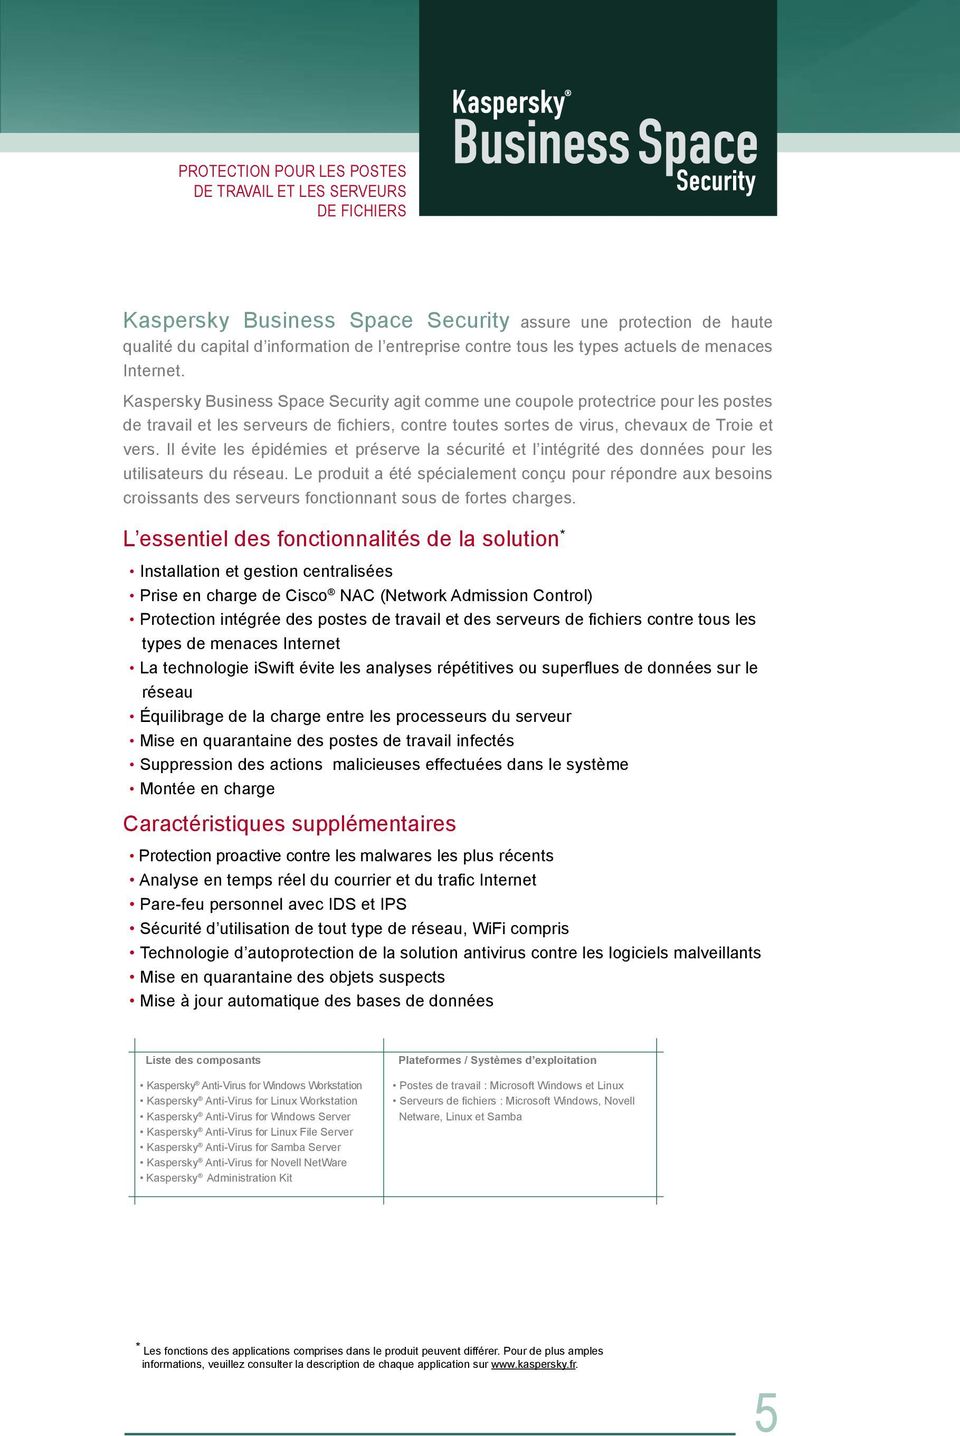 Kaspersky Business Space Security agit comme une coupole protectrice pour les postes de travail et les serveurs de fichiers, contre toutes sortes de virus, chevaux de Troie et vers.